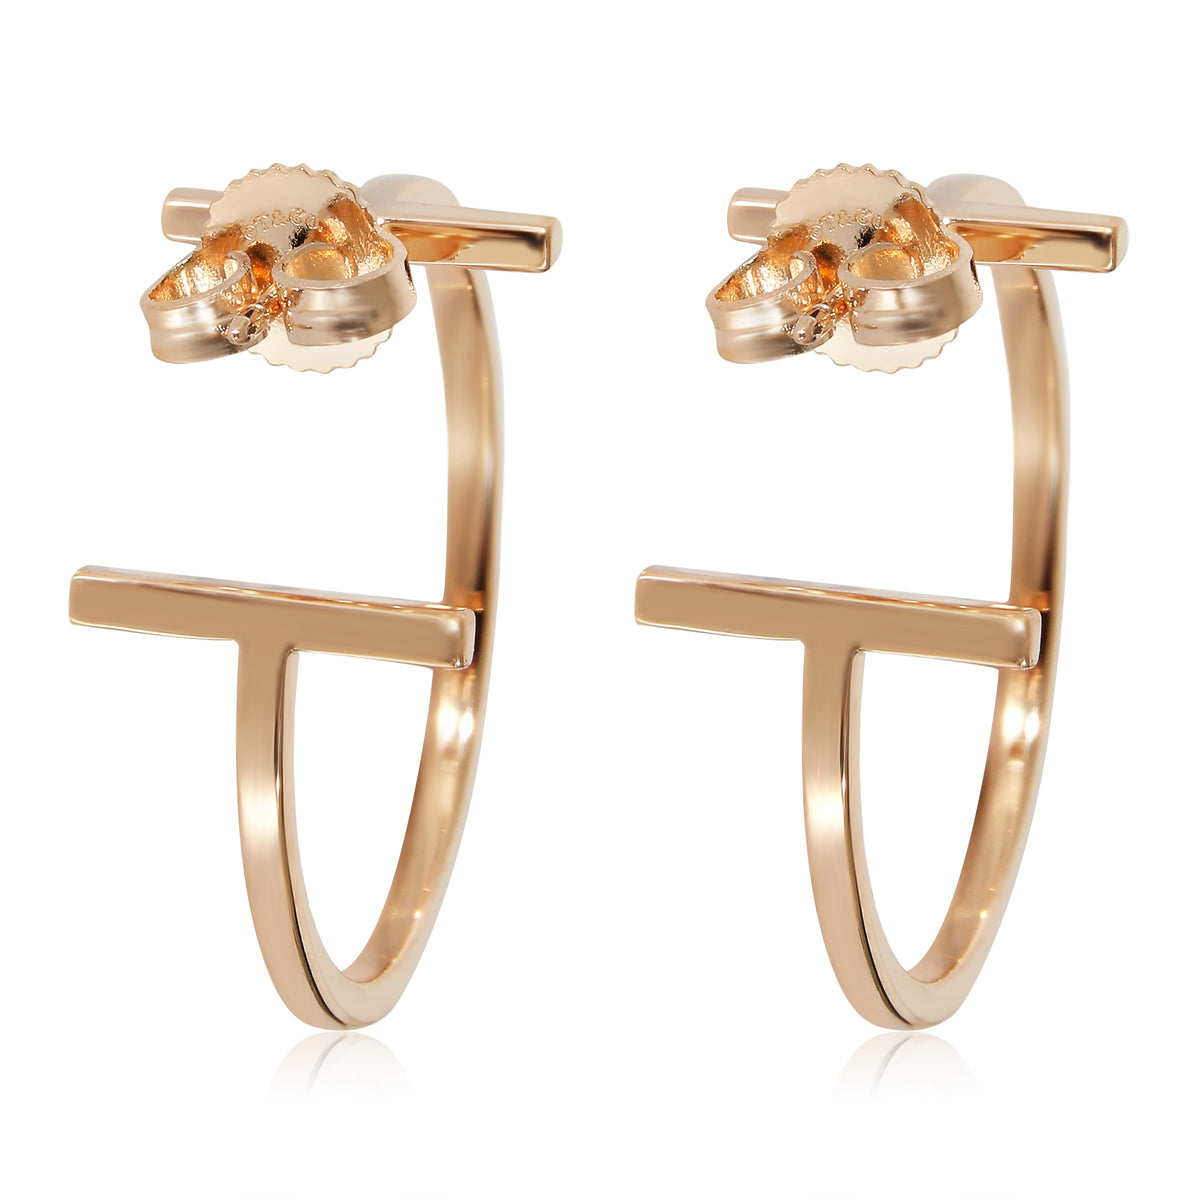 Tiffany & Co. T Hoop Earrings in 18k Rose Gold